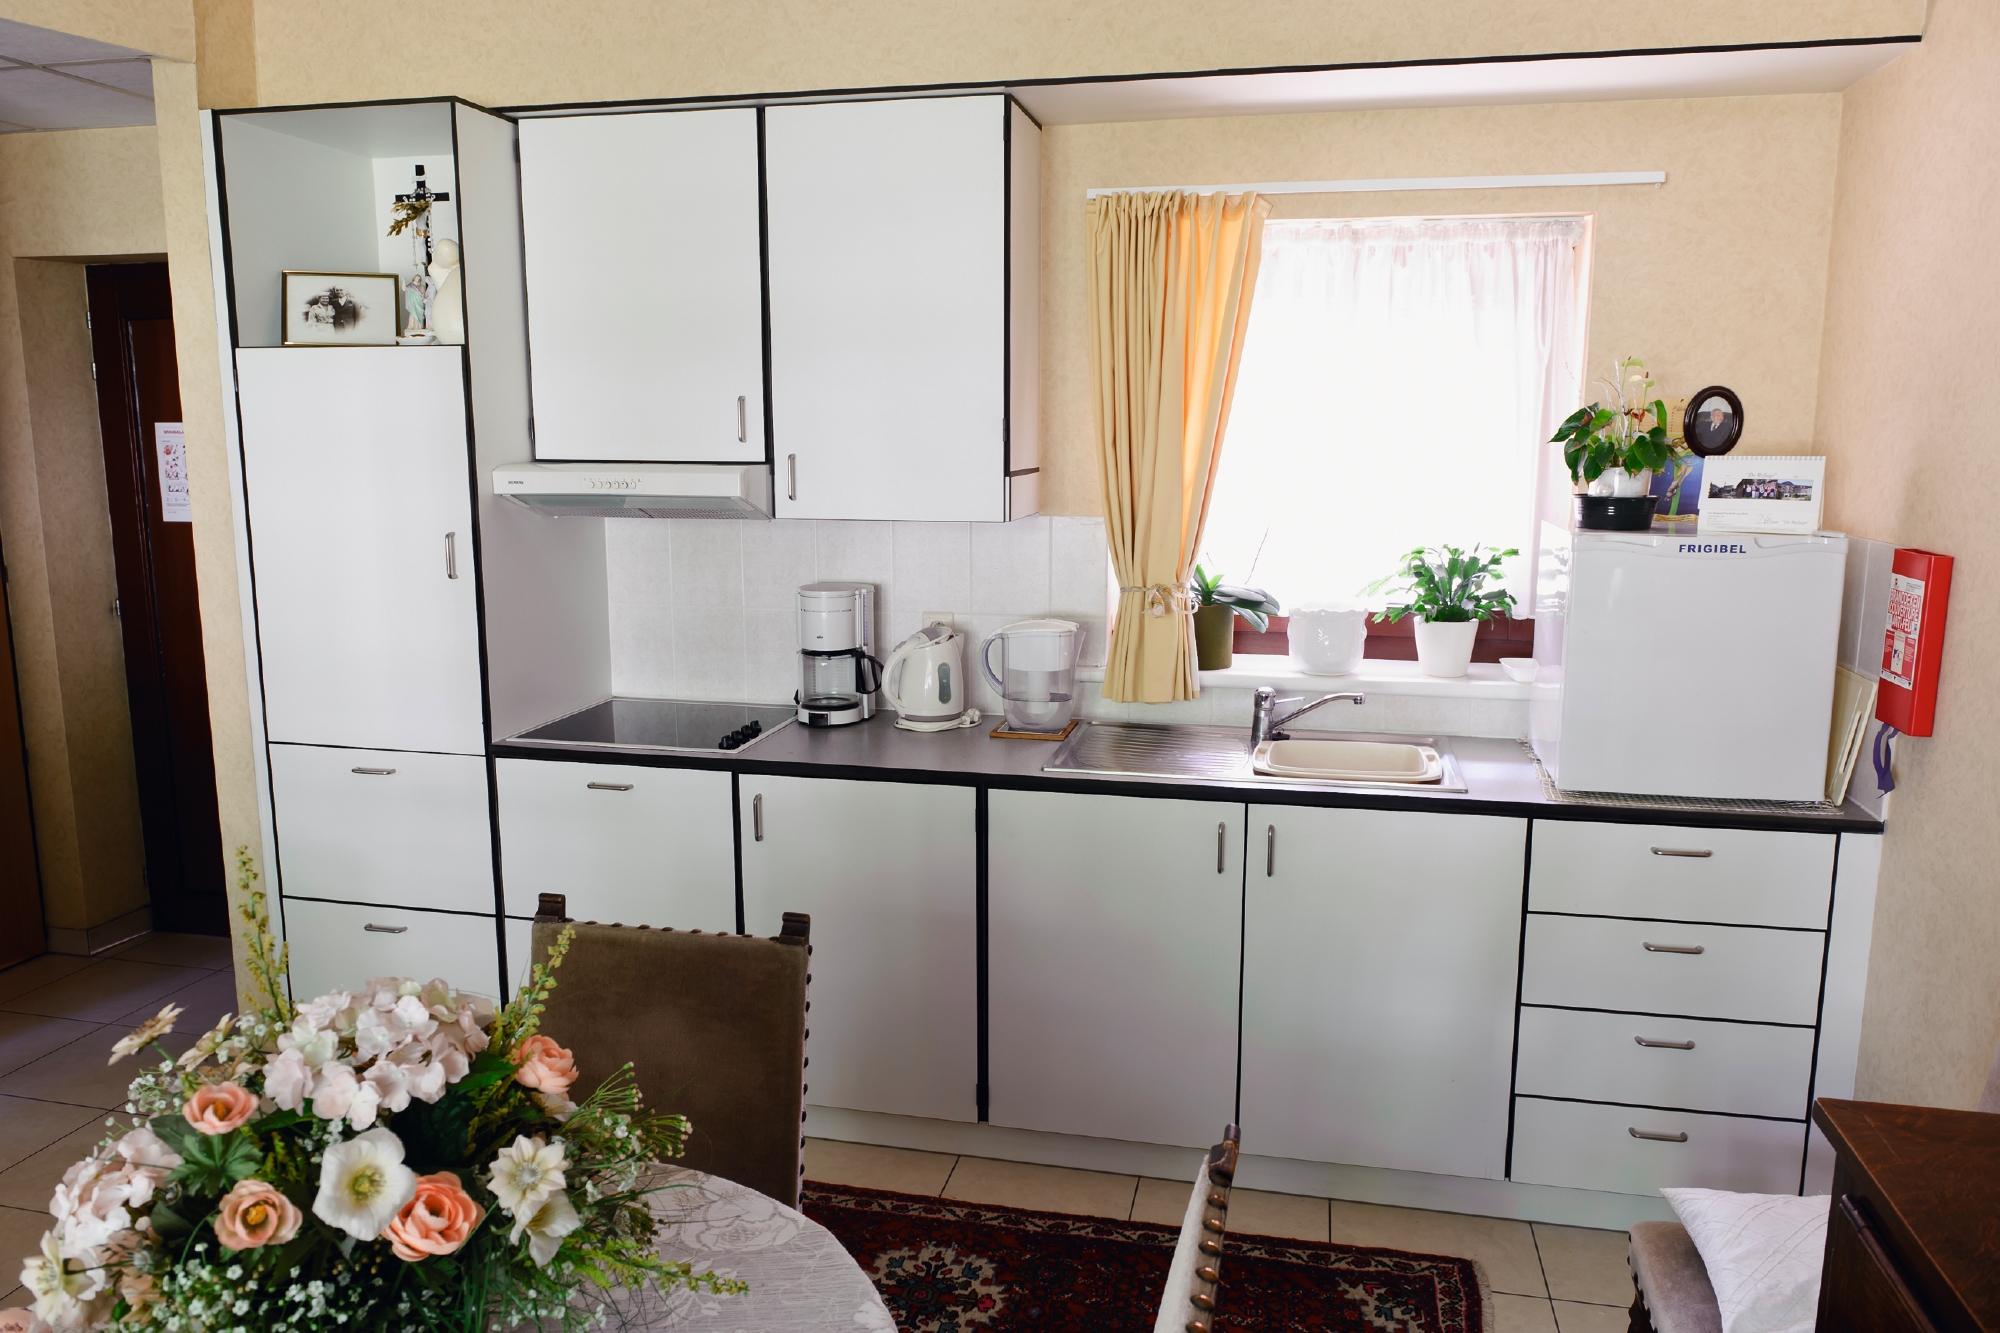 Keuken in assistentiewoningen de Refuge in Gent